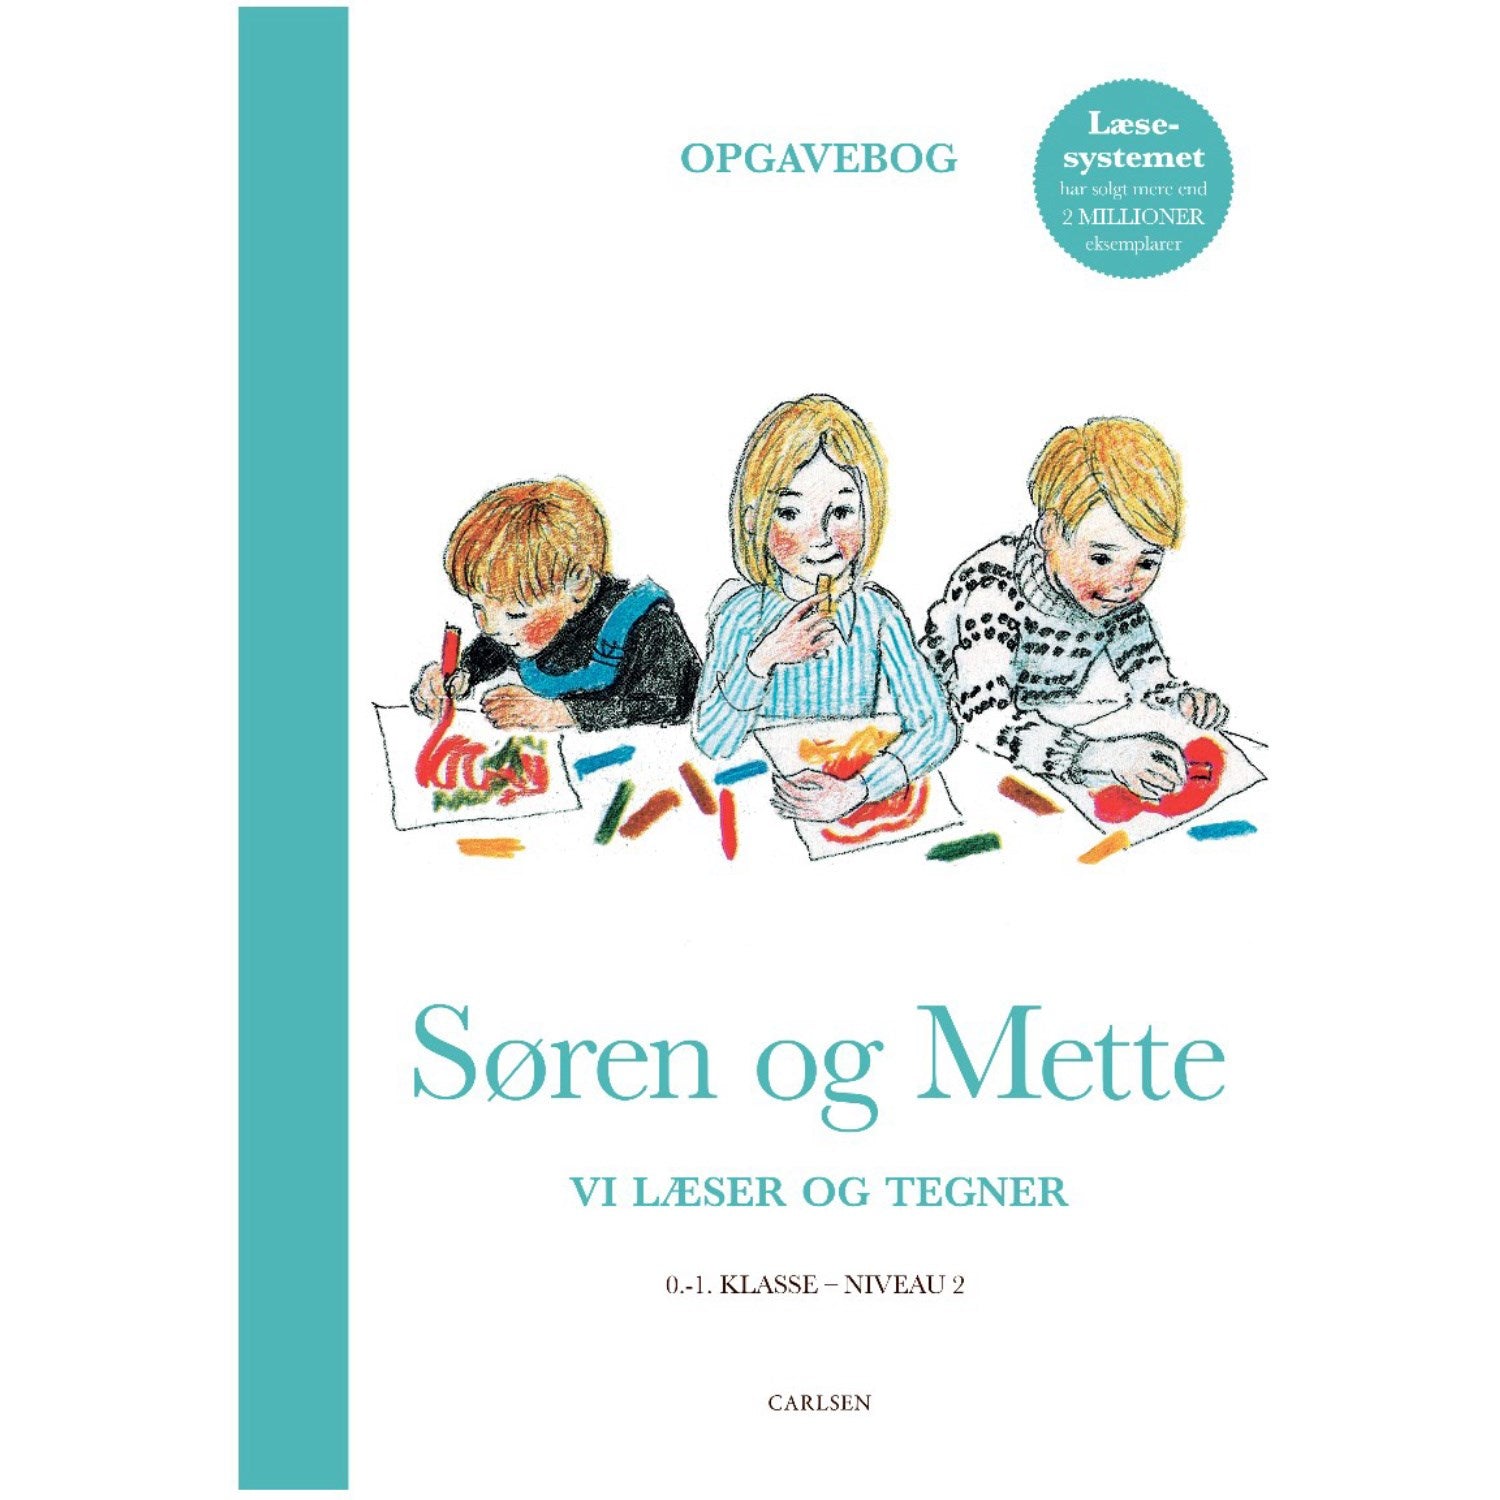 Forlaget Carlsen Søren og Mette: Vi læser og tegner (Opgavebog 2, 0-1. klasse)